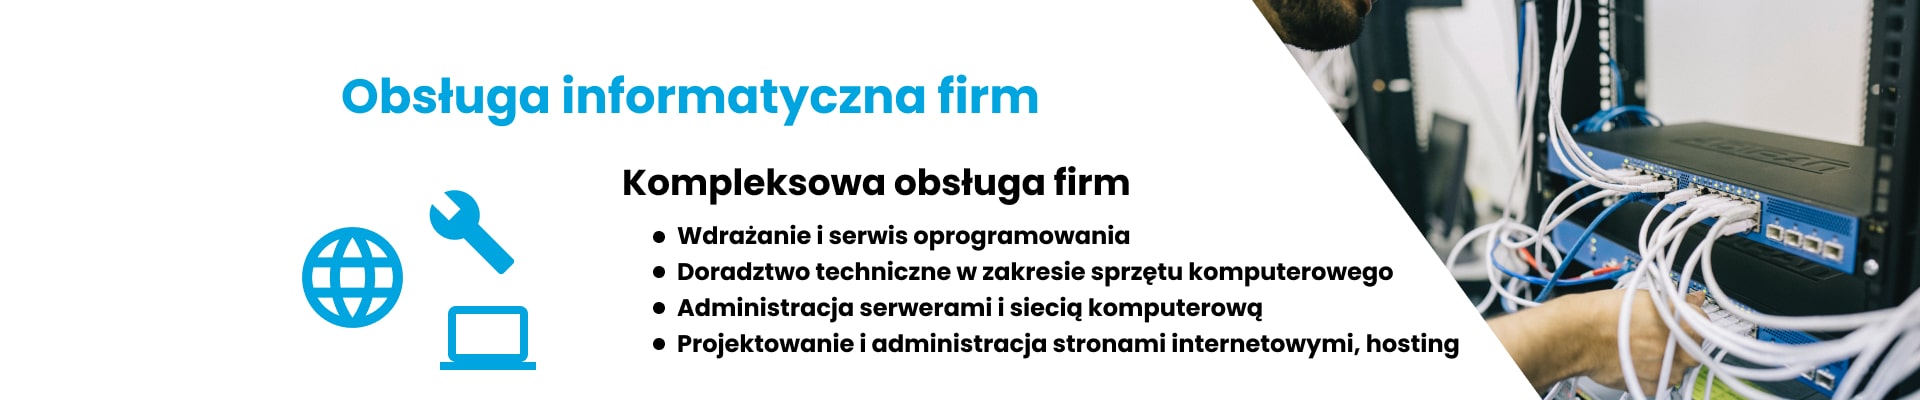 Obsługa informatyczna firm Bydgoszcz